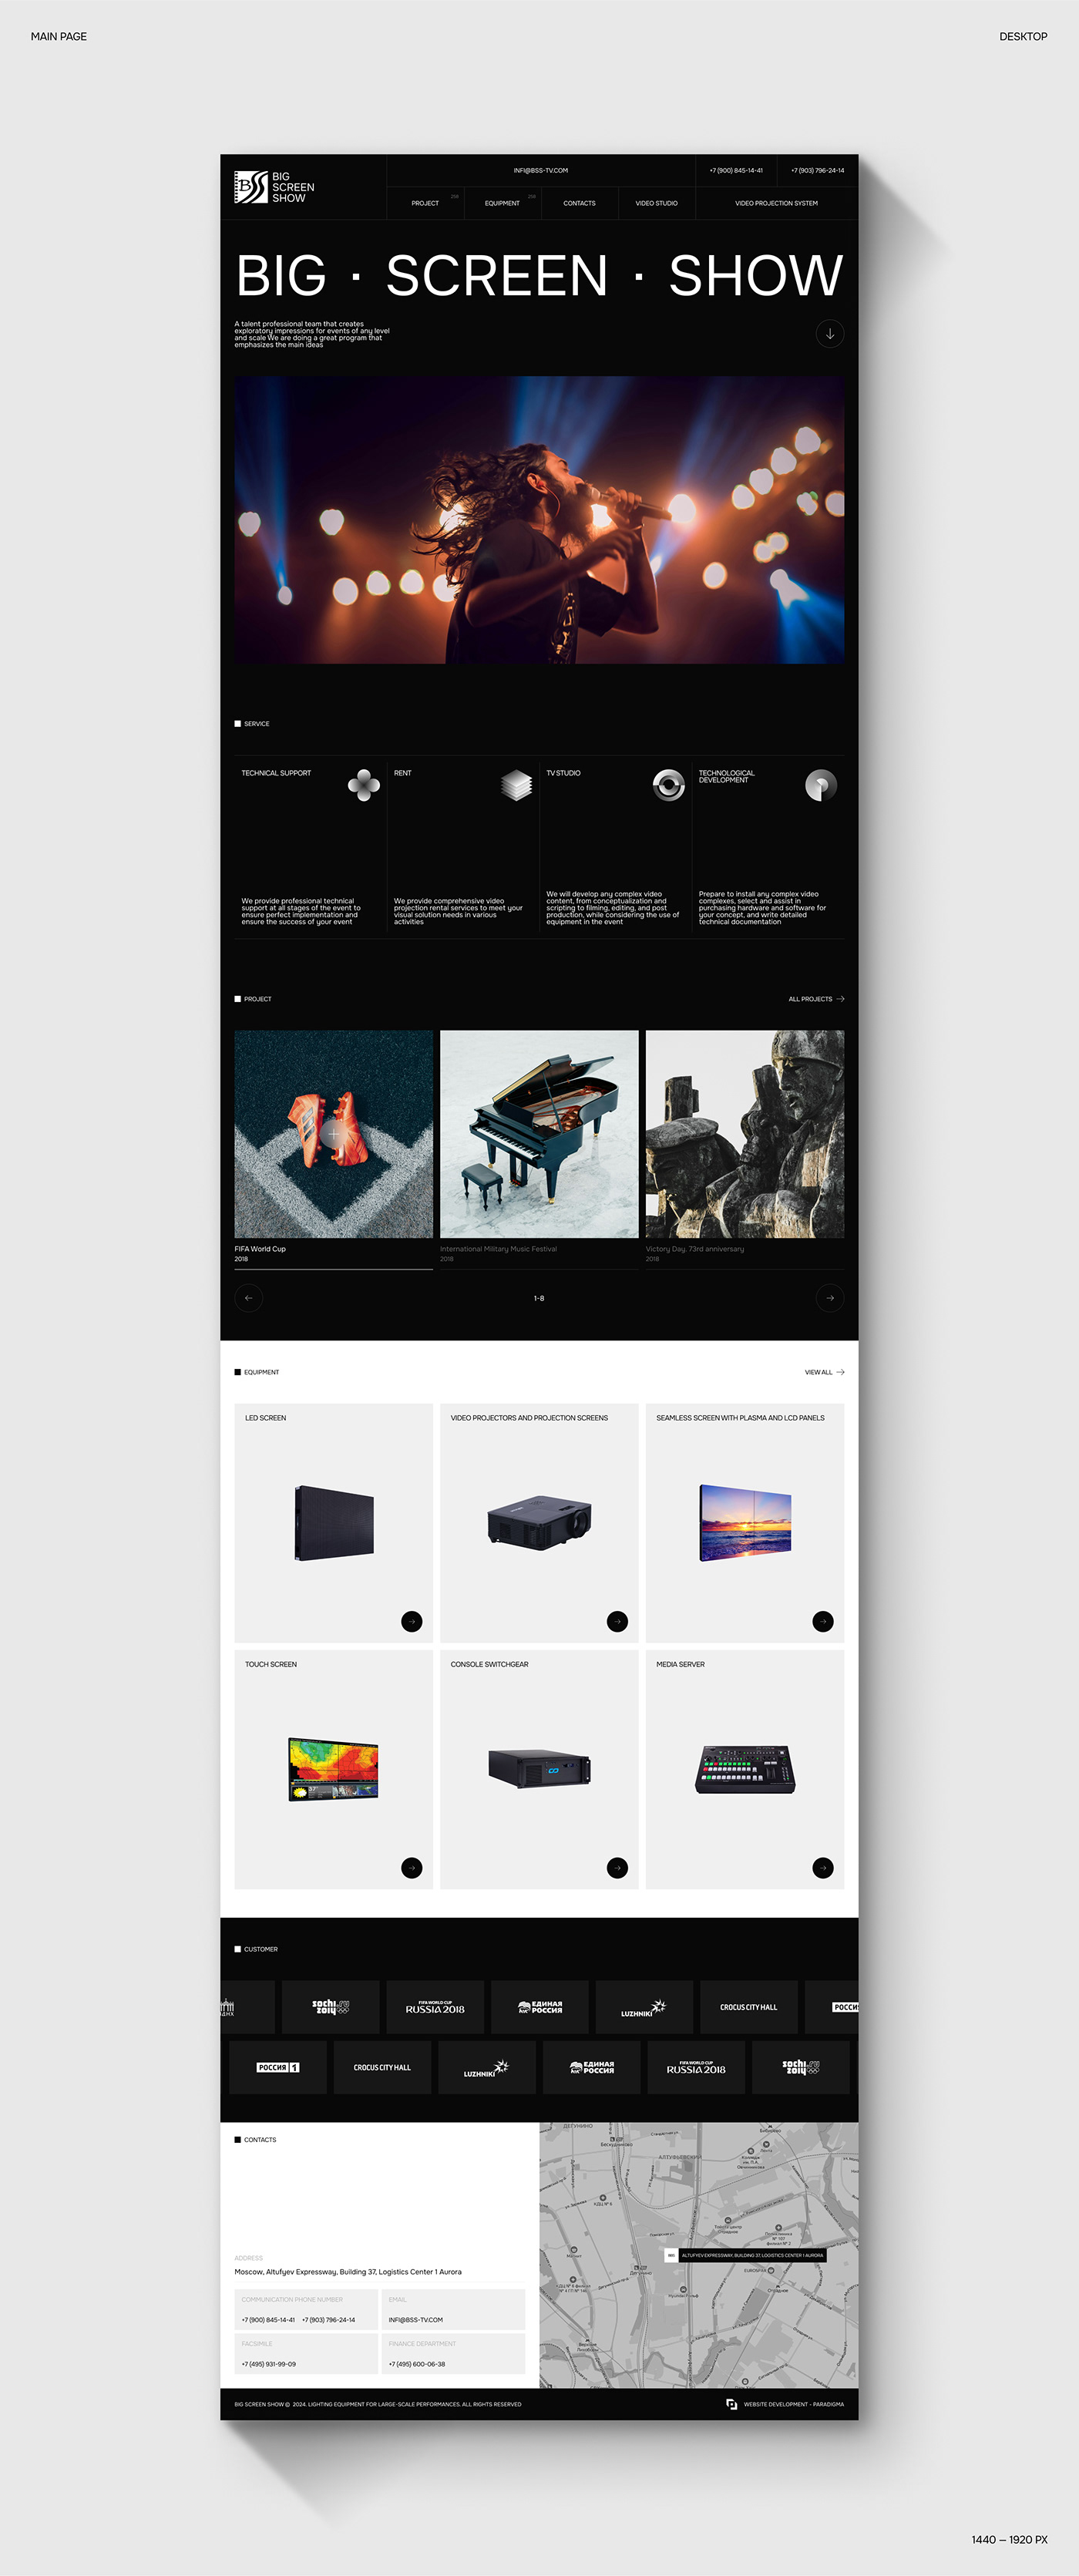 UI/UX user interface Web Design  Experience Website corporate